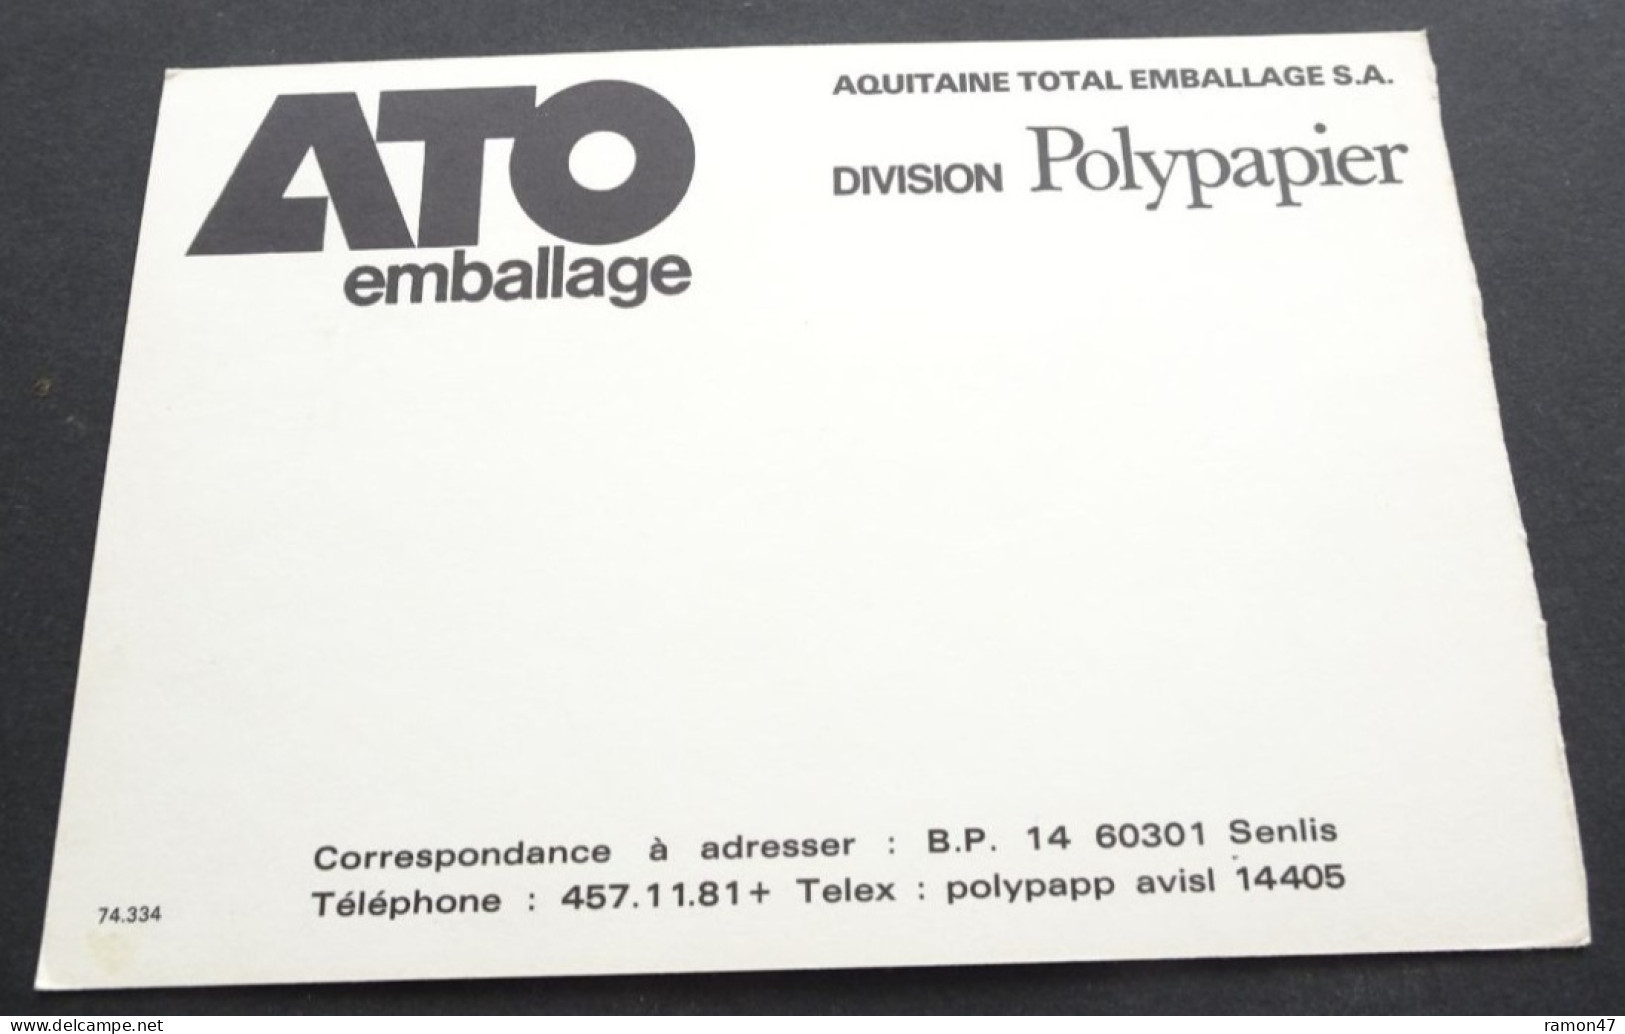 Aquitaine Total Emballage - Division Polypapier - Publicidad